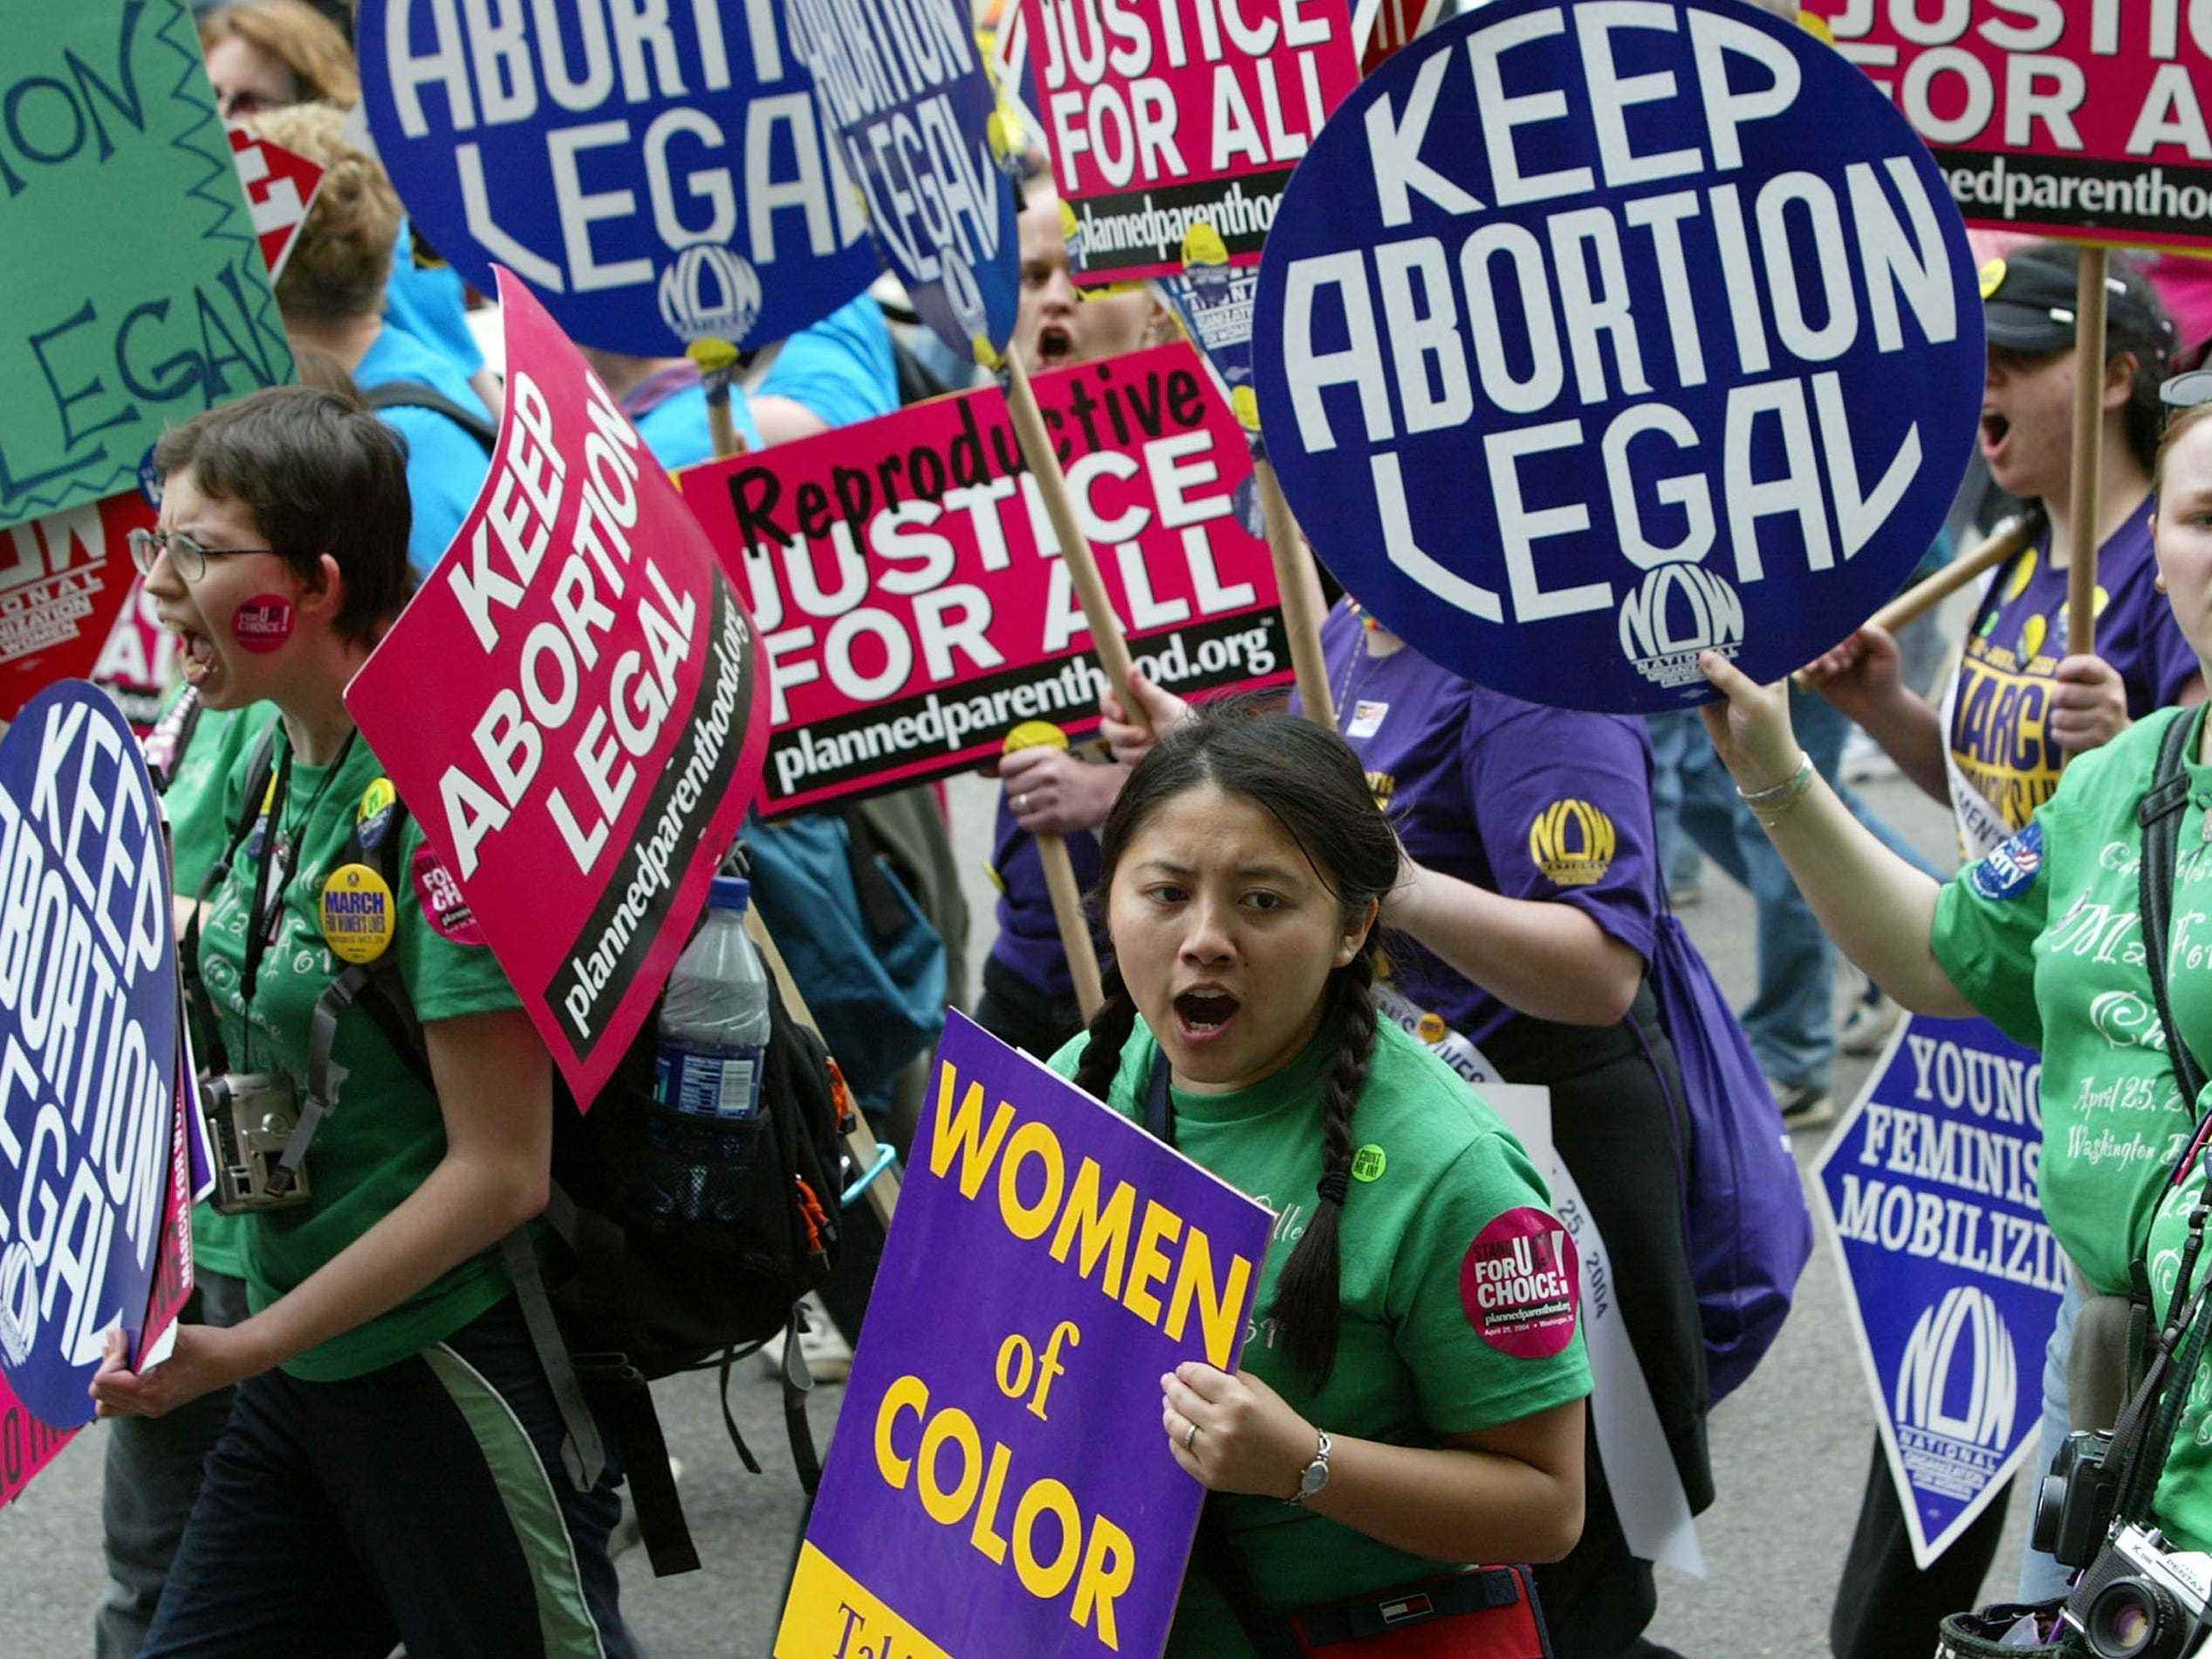 Hunderttausende Aktivisten demonstrierten für Abtreibungsrechte